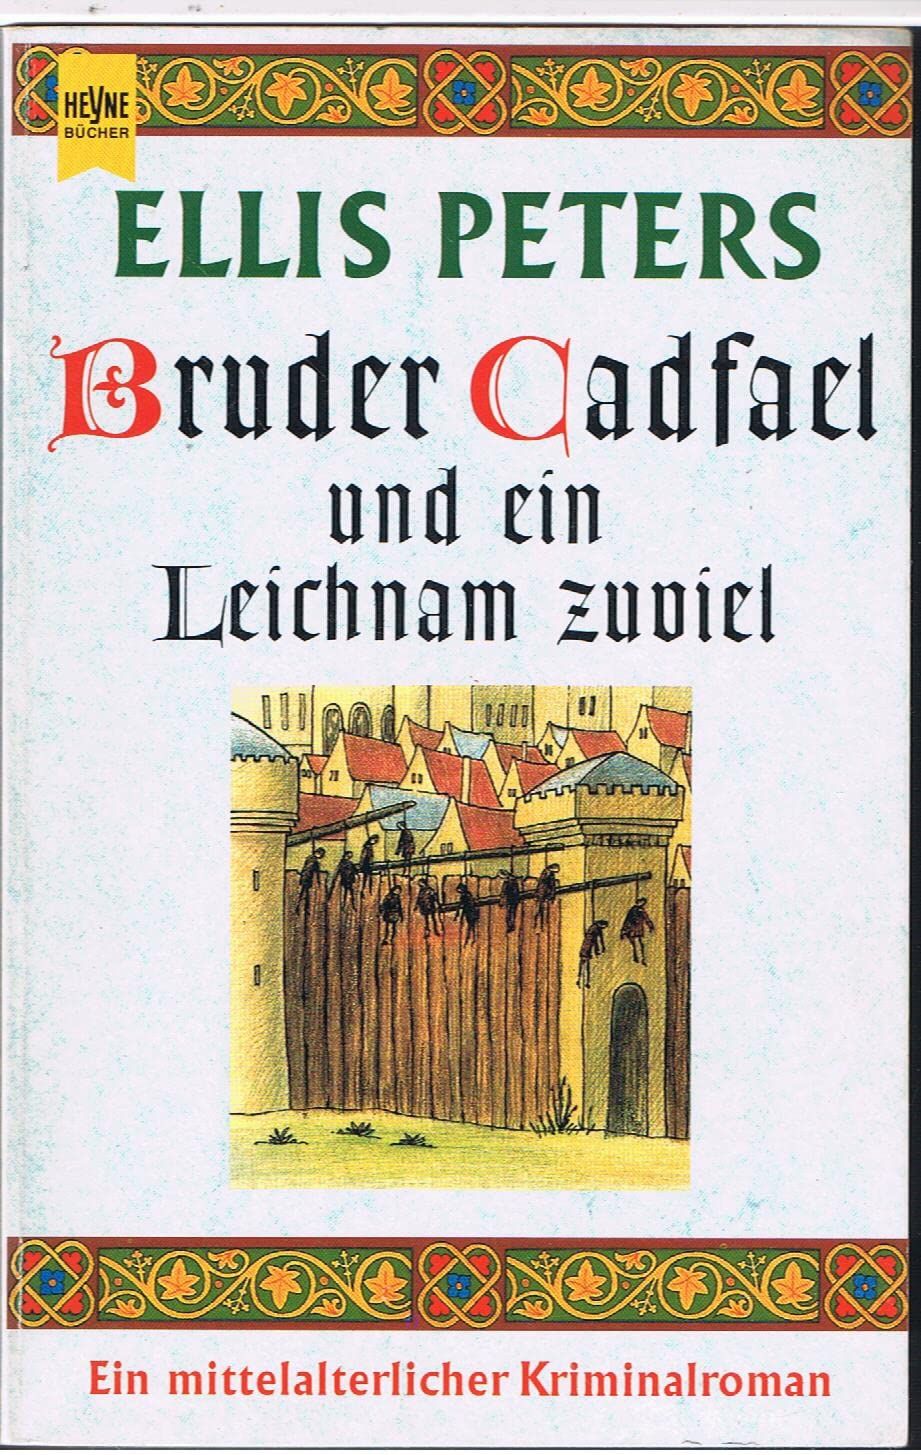 Bruder Cadfael und eine Leiche zuviel ein mittelalterlicher Kriminalroman - Peters, Ellis